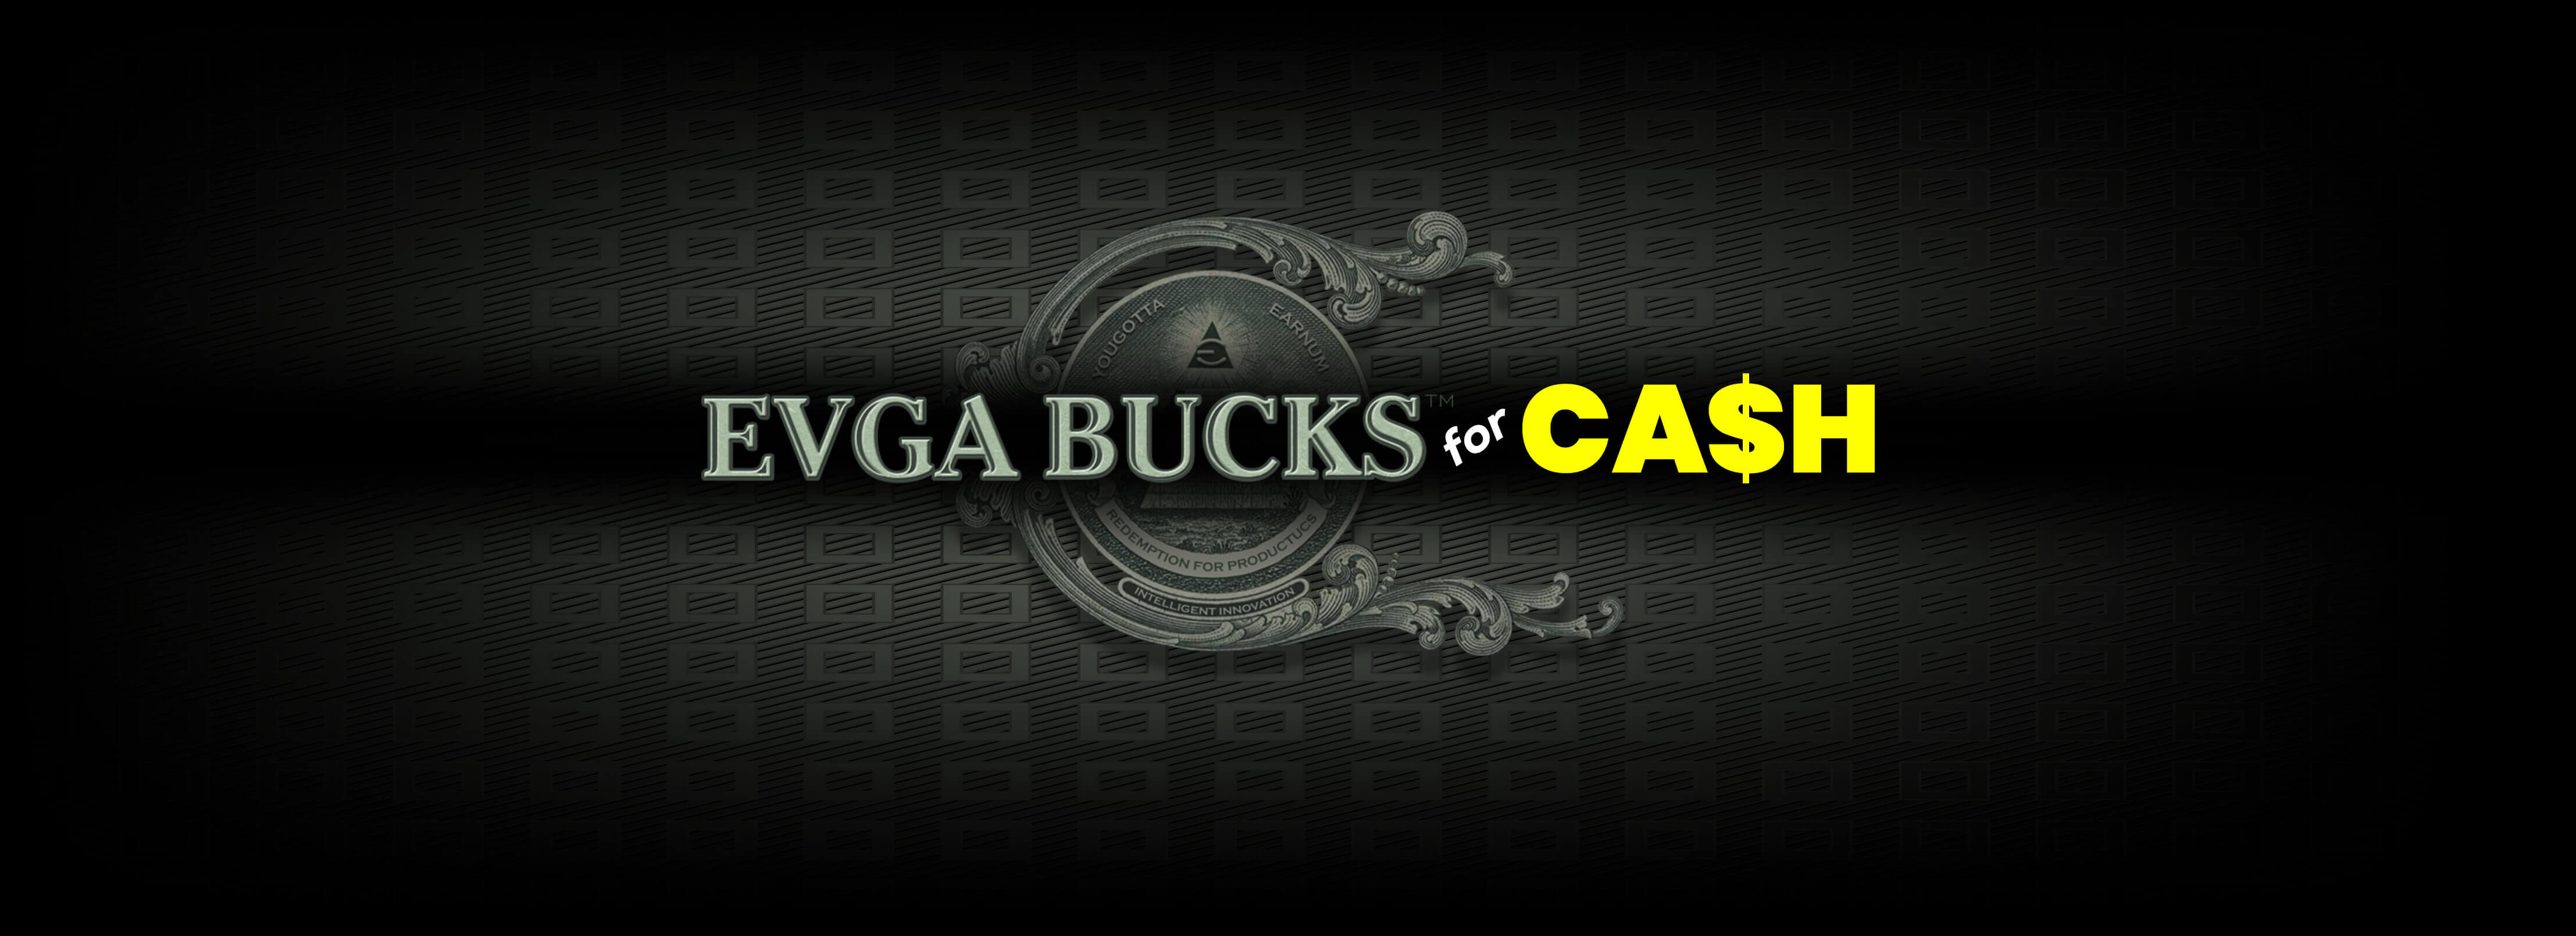 EVGA回馈金™ (EVGA Bucks™) 兑换现金计画 !